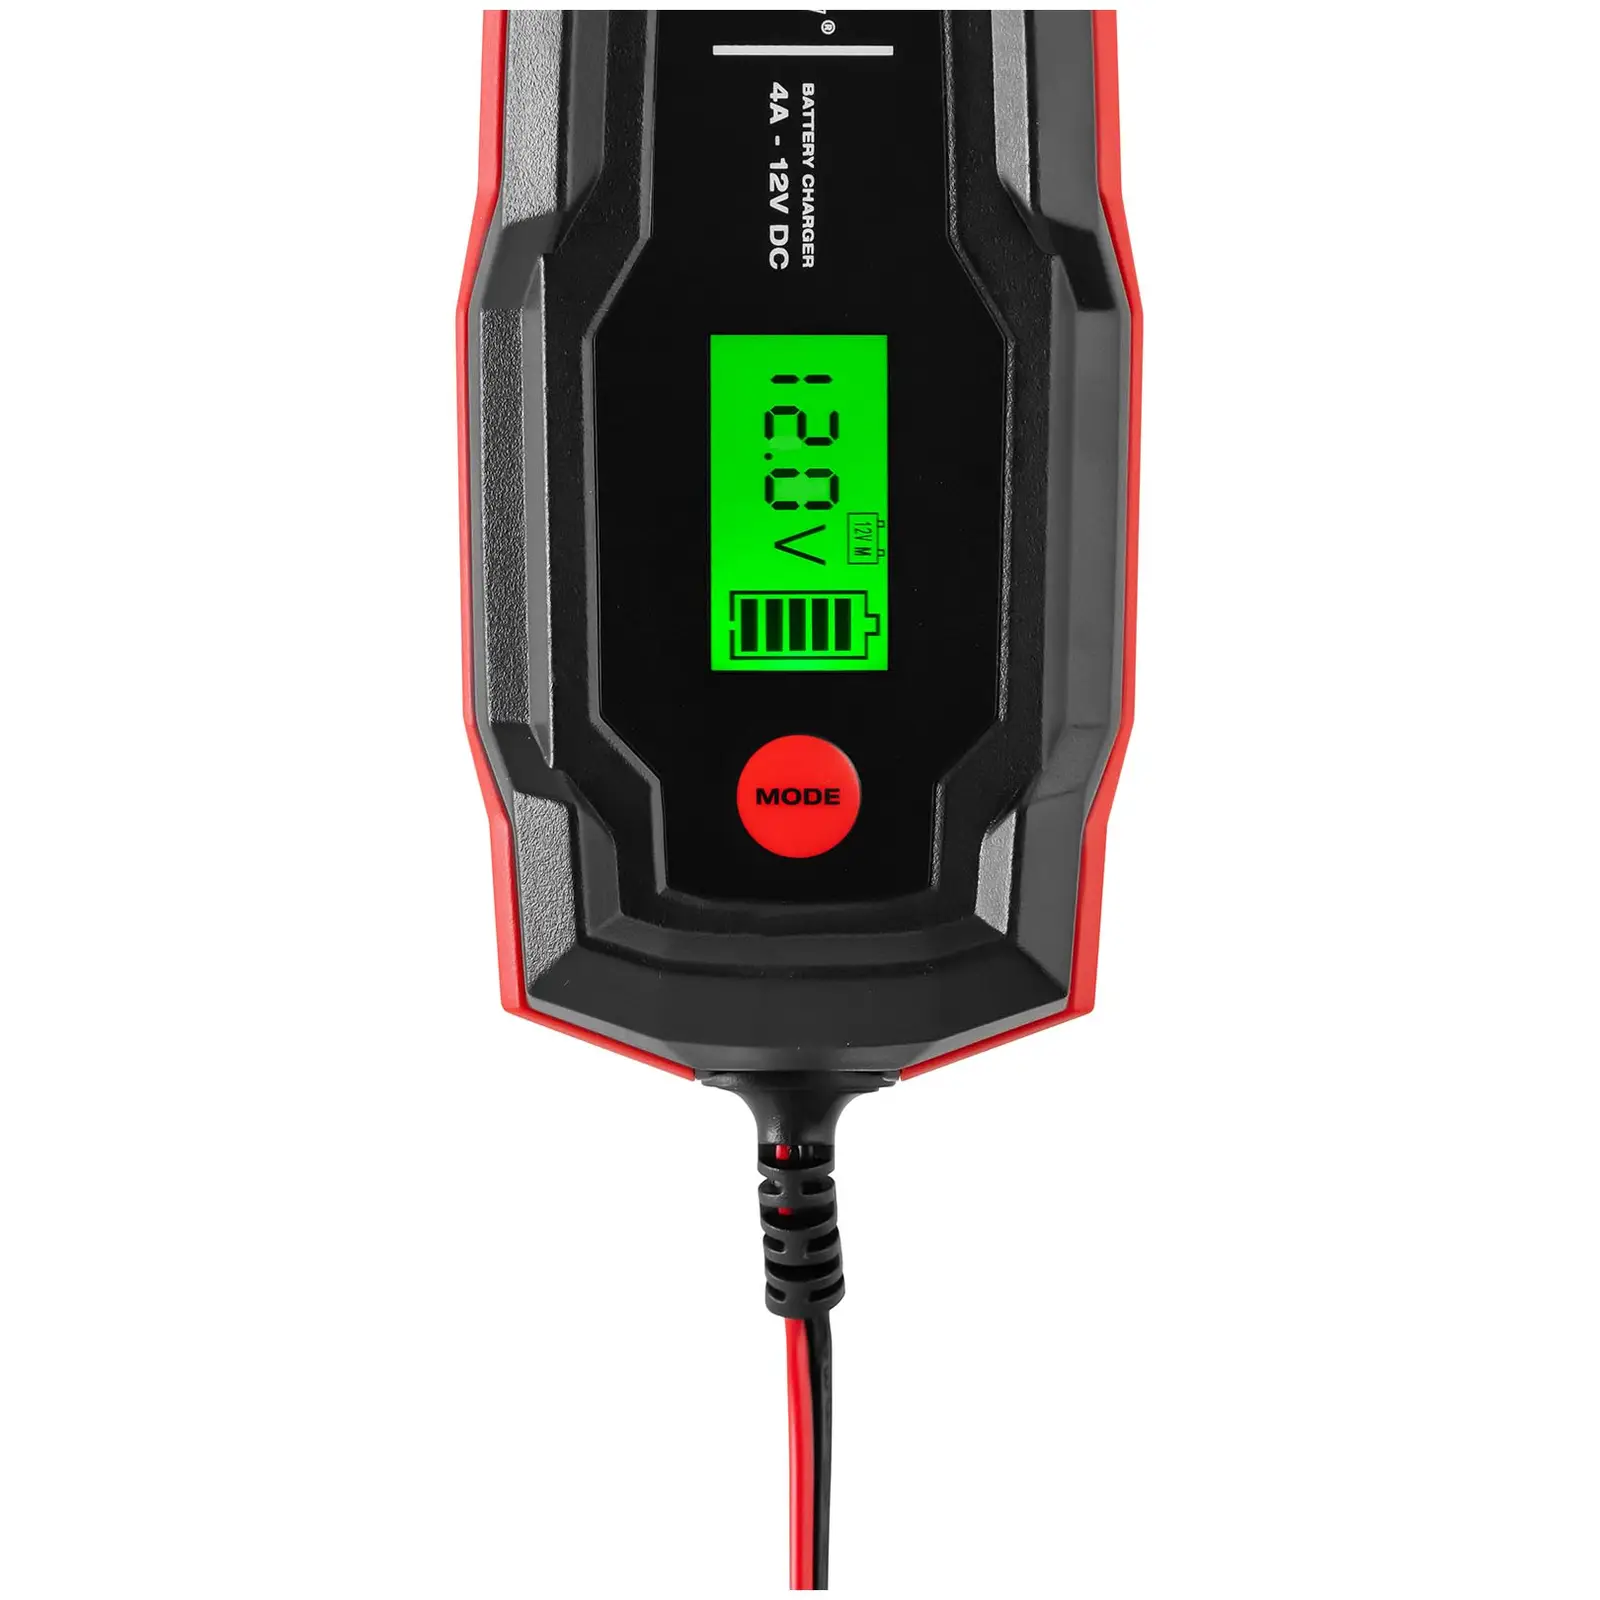 Chargeur de batterie de voiture -12 V - 4 A - LCD